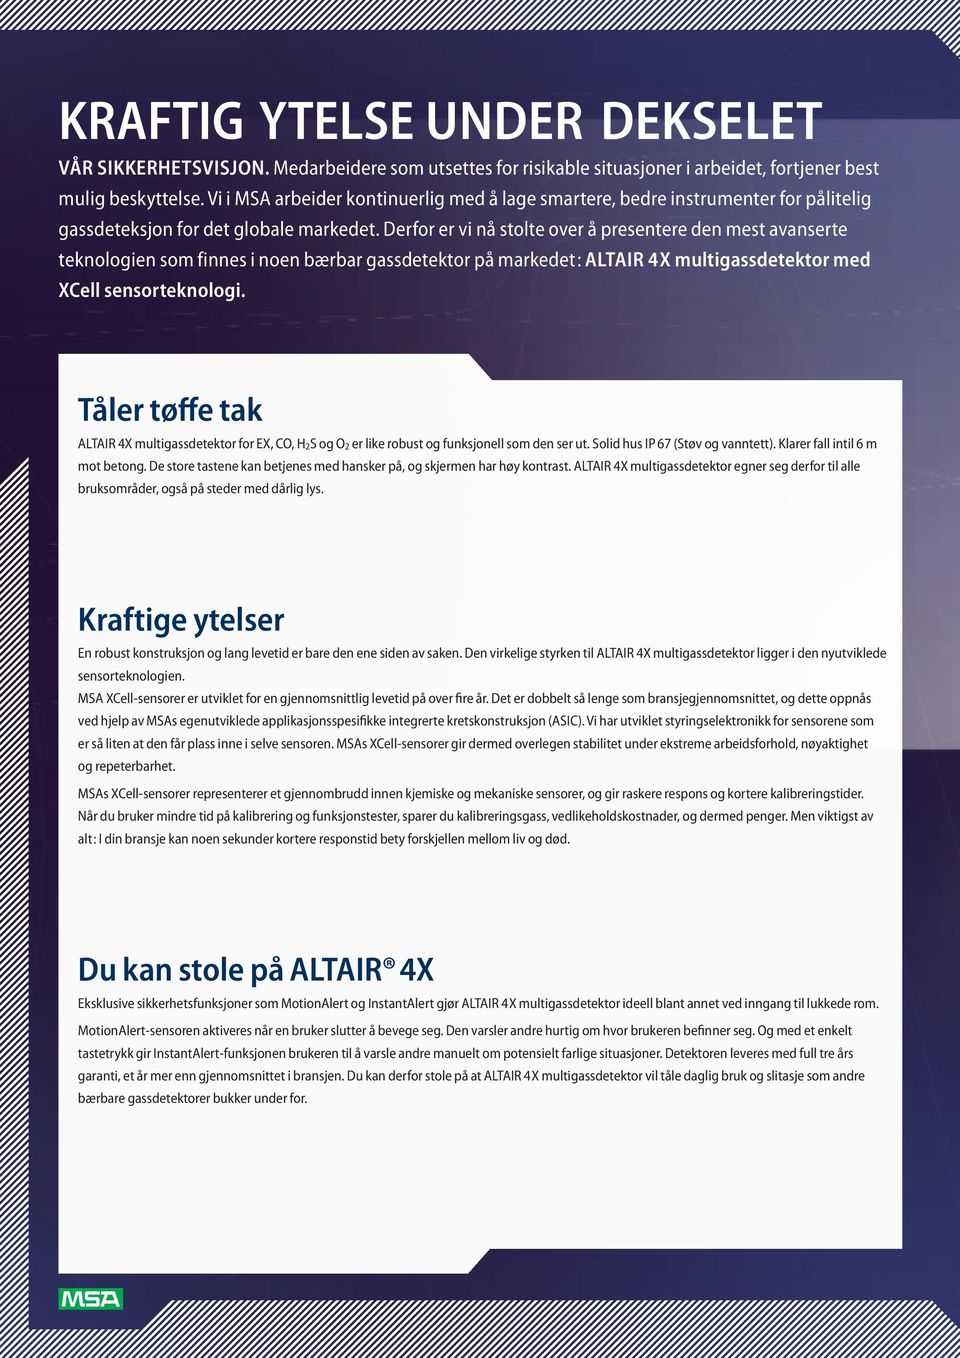 Derfor er vi nå stolte over å presentere den mest avanserte teknologien som finnes i noen bærbar gassdetektor på markedet: ALTAIR 4X multigassdetektor med XCell sensorteknologi.